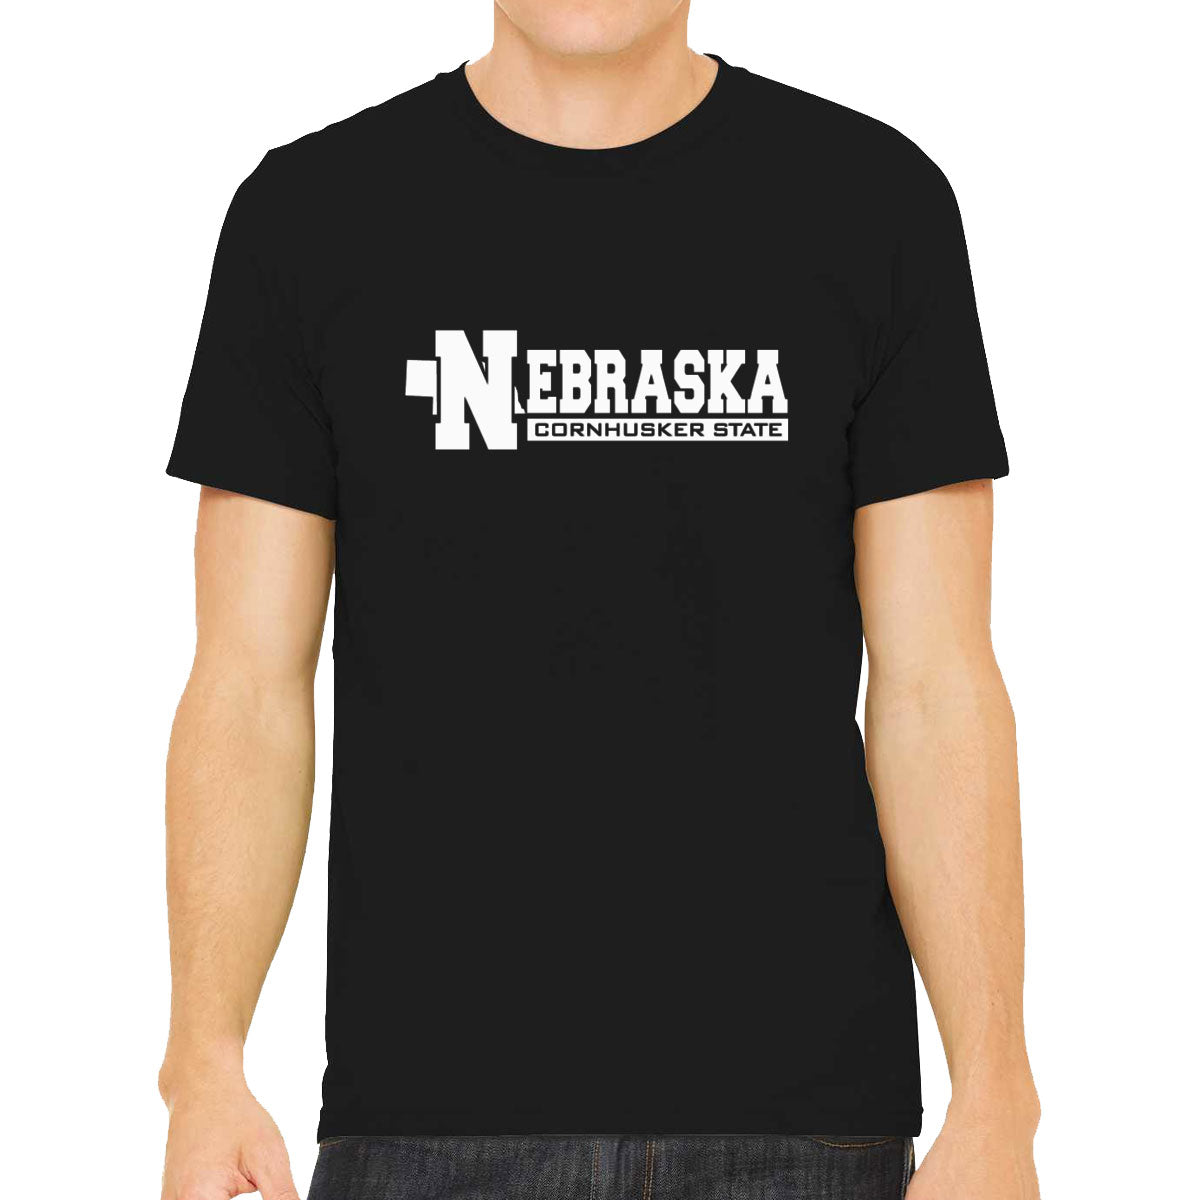 Nebraska Cornhusker State Men's T-shirt